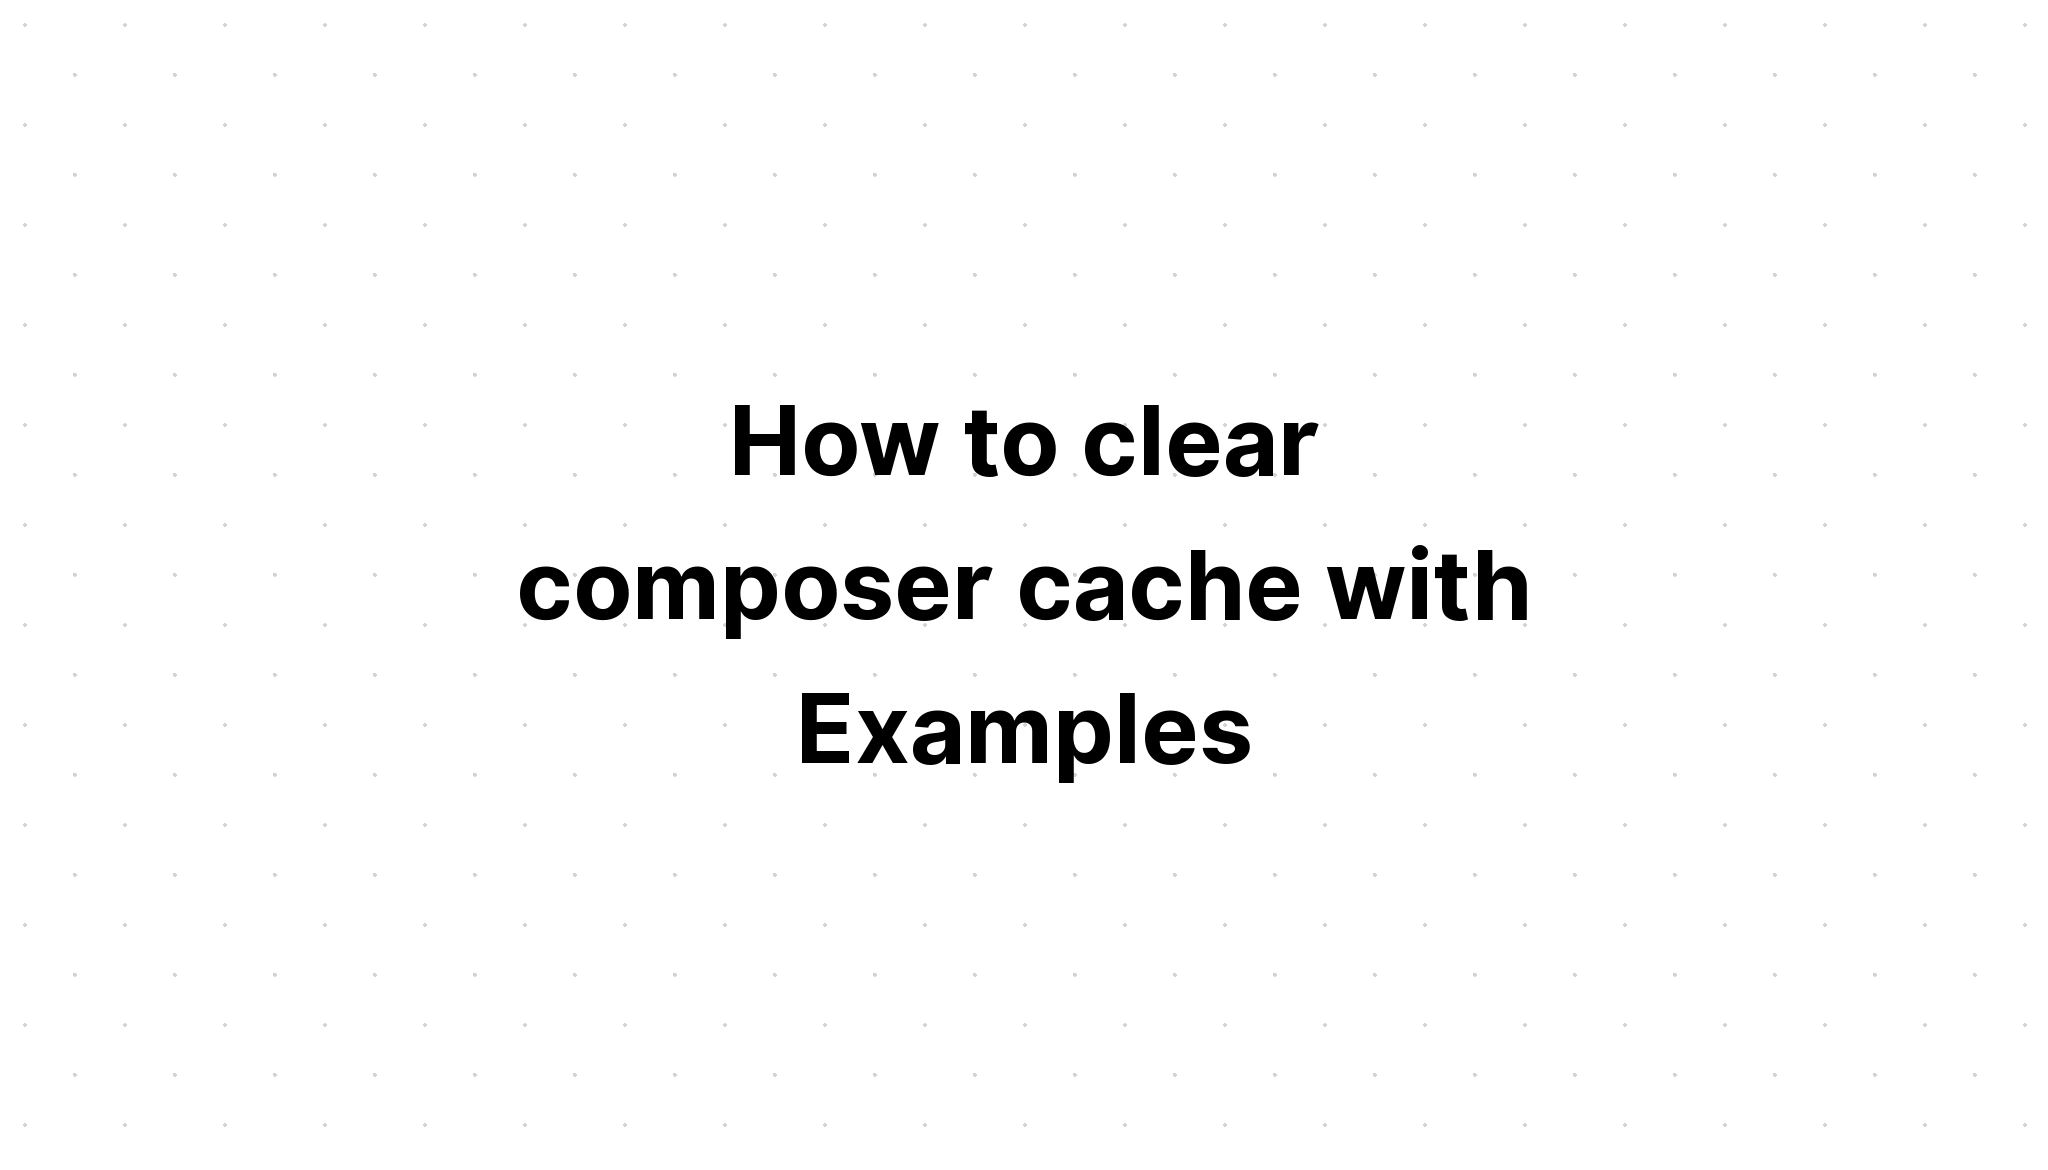 Cara menghapus cache komposer dengan Contoh